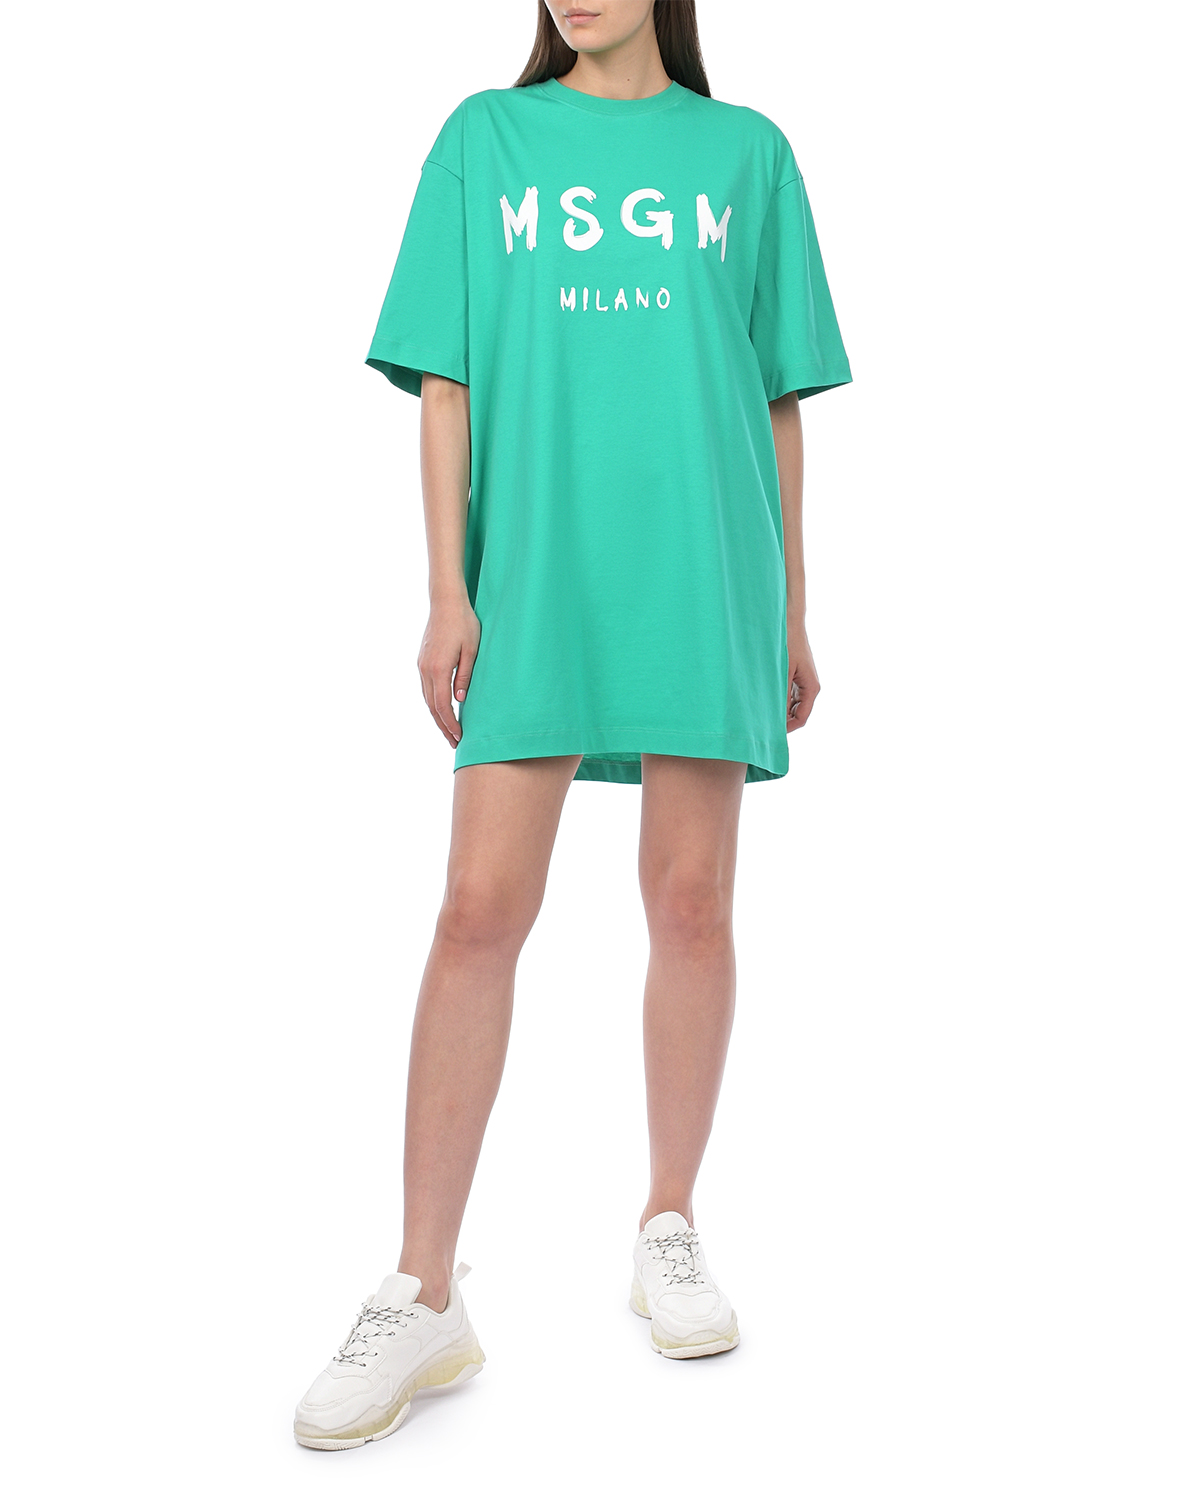 Платье-футболка с лого MSGM, размер 42, цвет зеленый - фото 2